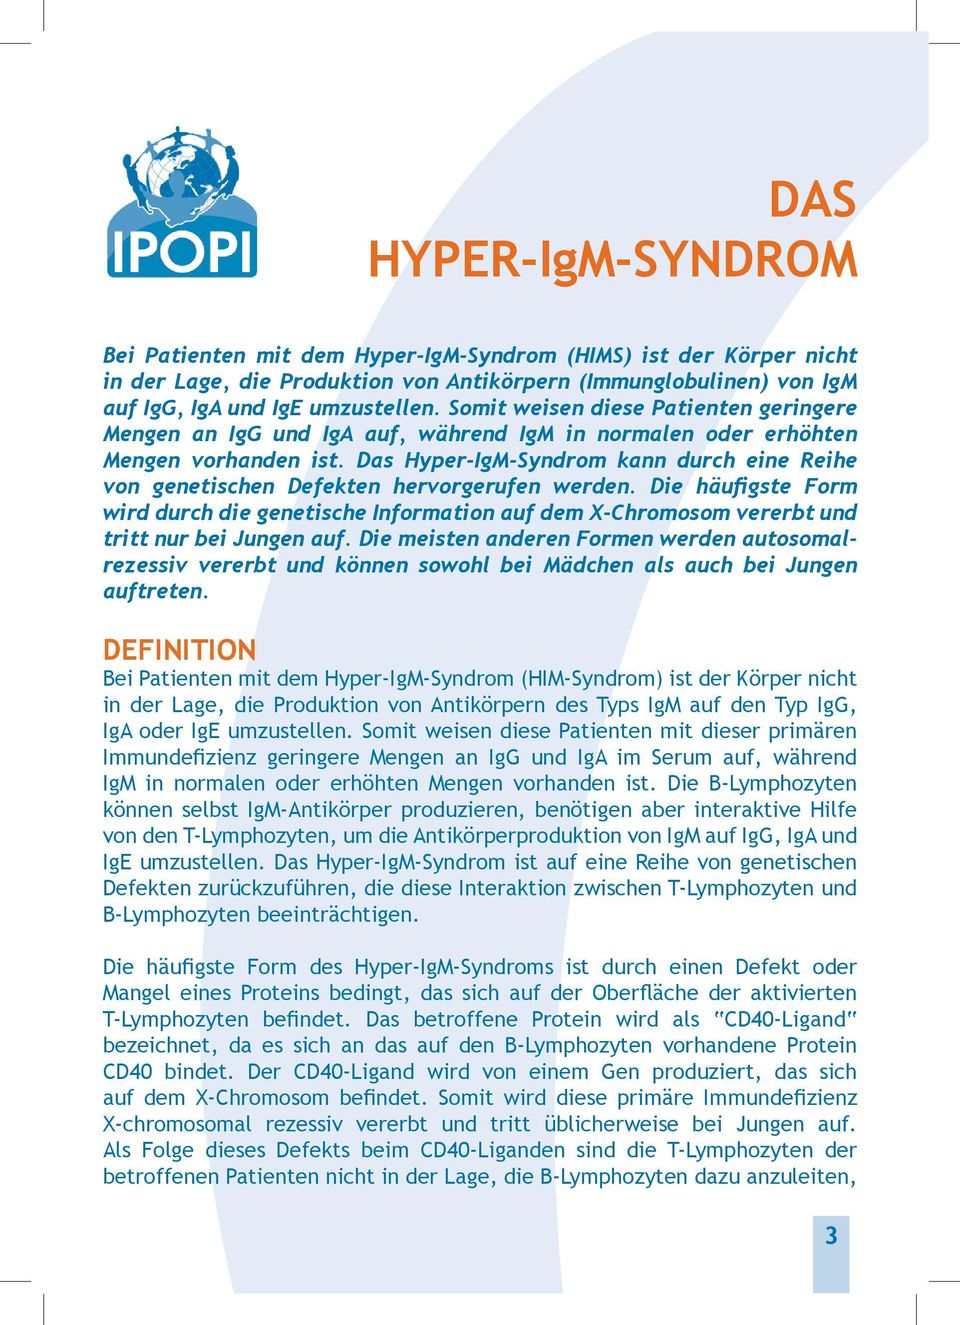 Das Hyper-IgM-Syndrom kann durch eine Reihe von genetischen Defekten hervorgerufen werden.